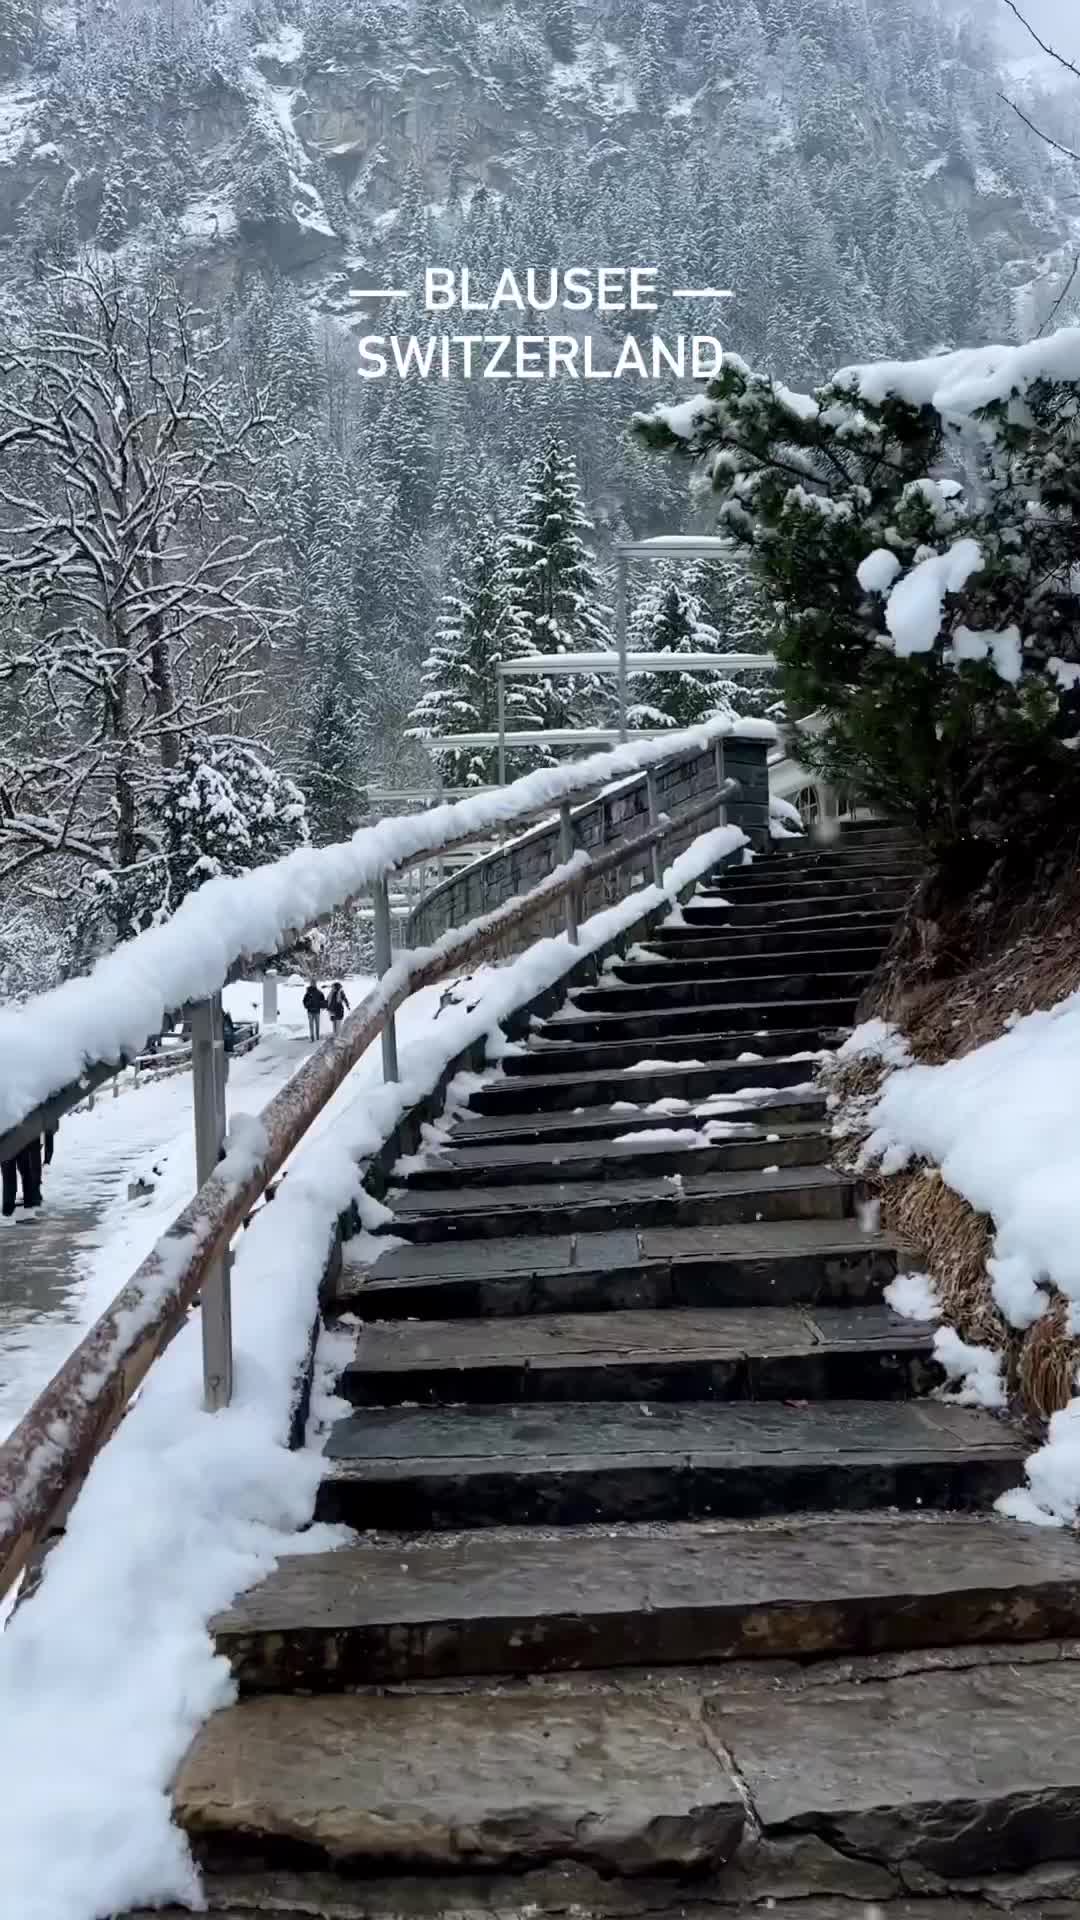 Winter Wonderland at Blausee, Switzerland